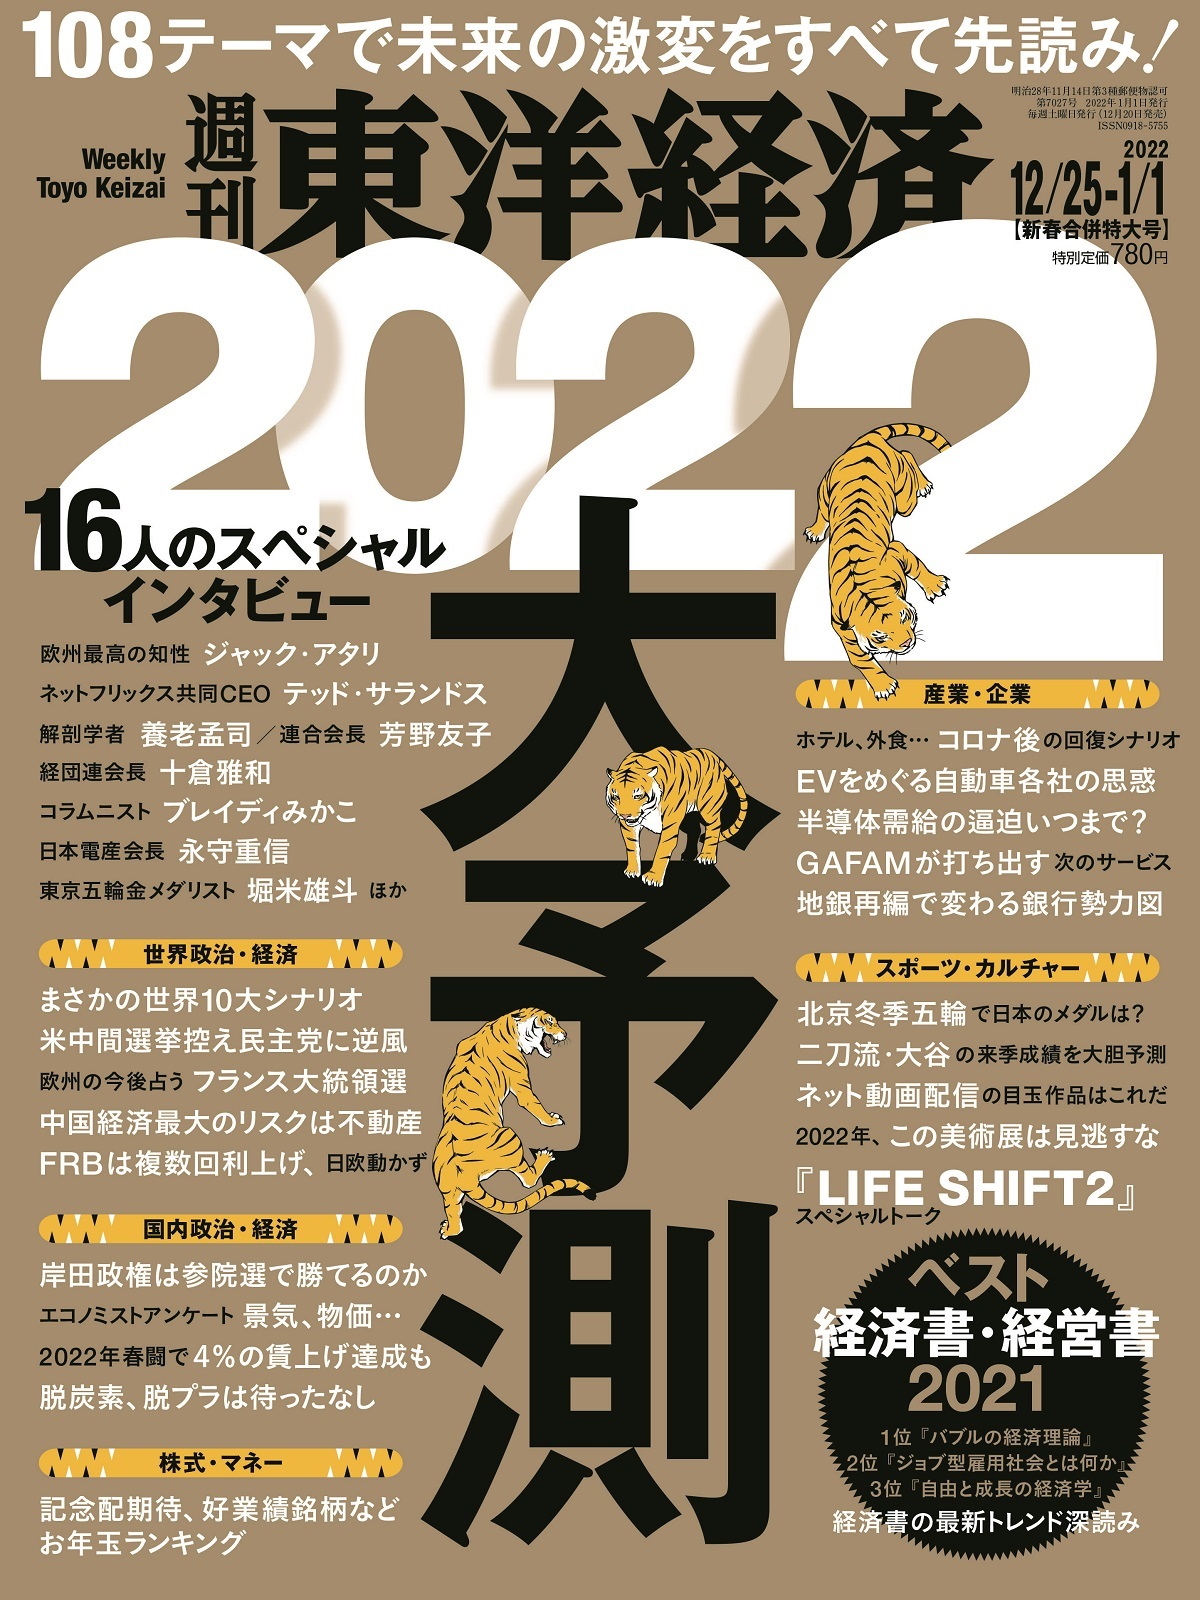 週刊東洋経済 2021年12/25-2022年1/1日新春合併特大号